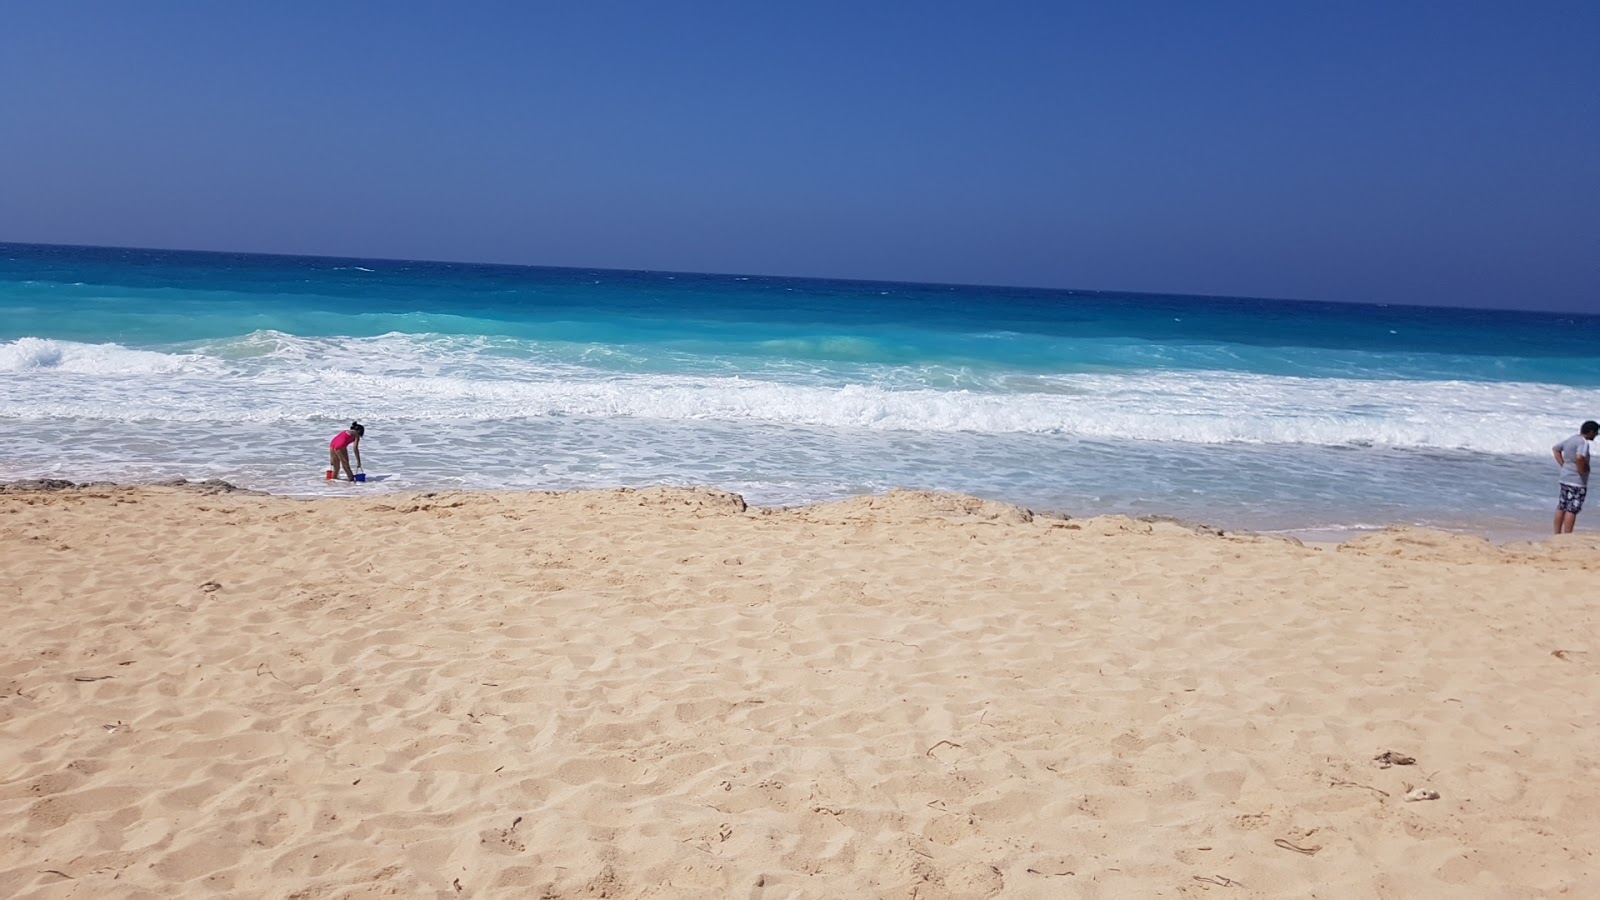 Canaria Beach'in fotoğrafı - rahatlamayı sevenler arasında popüler bir yer